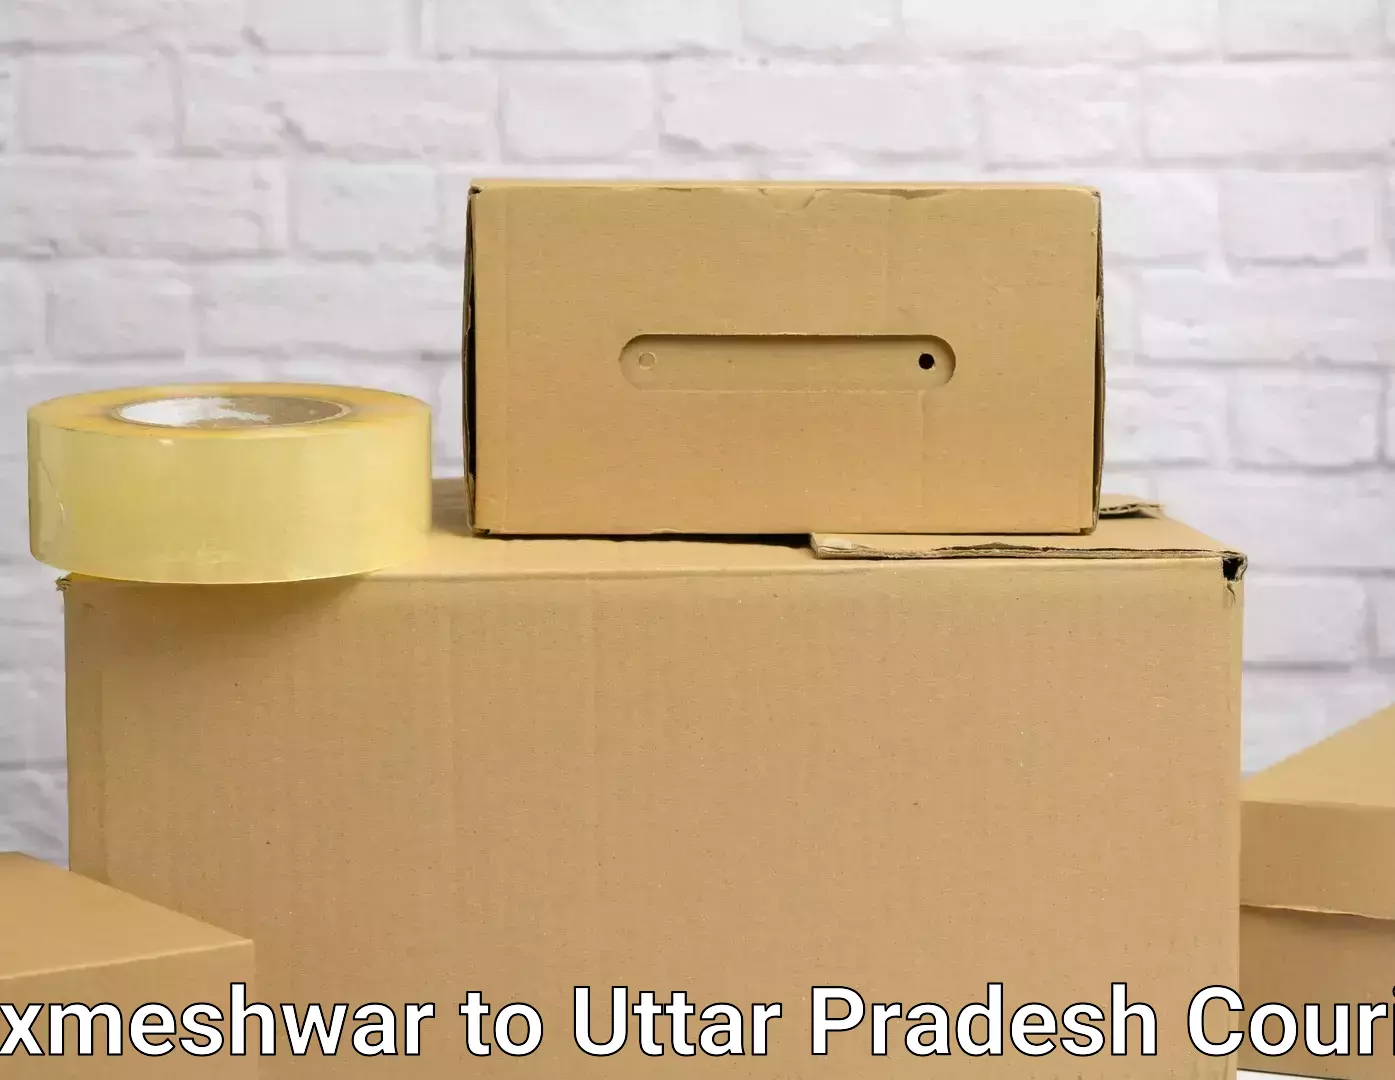 Furniture transport service Laxmeshwar to Pratapgarh